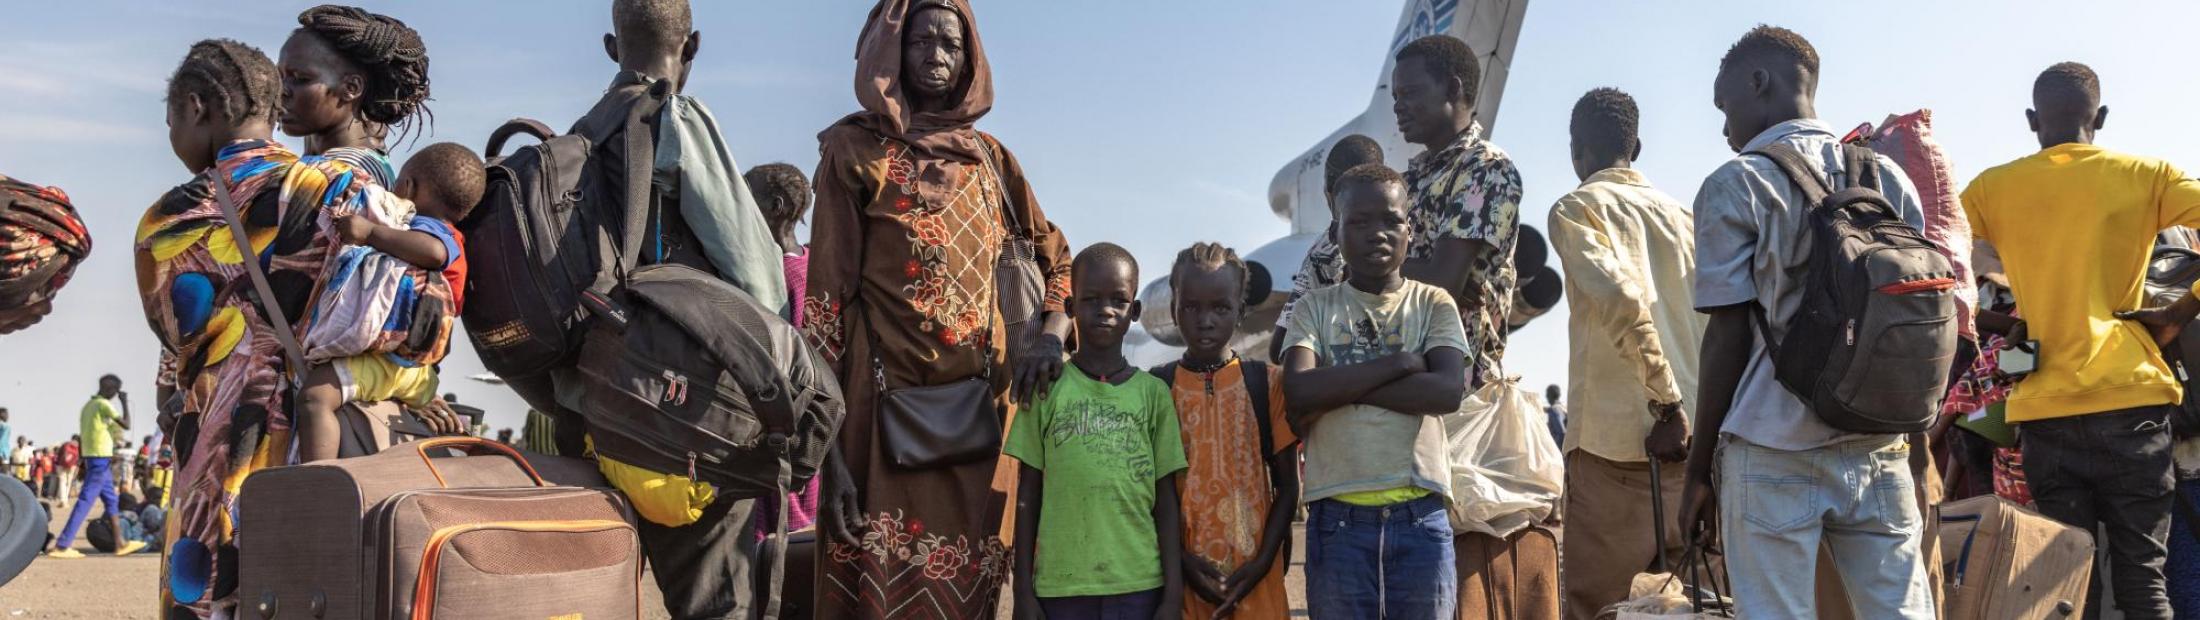 Sudán necesita ayuda urgente